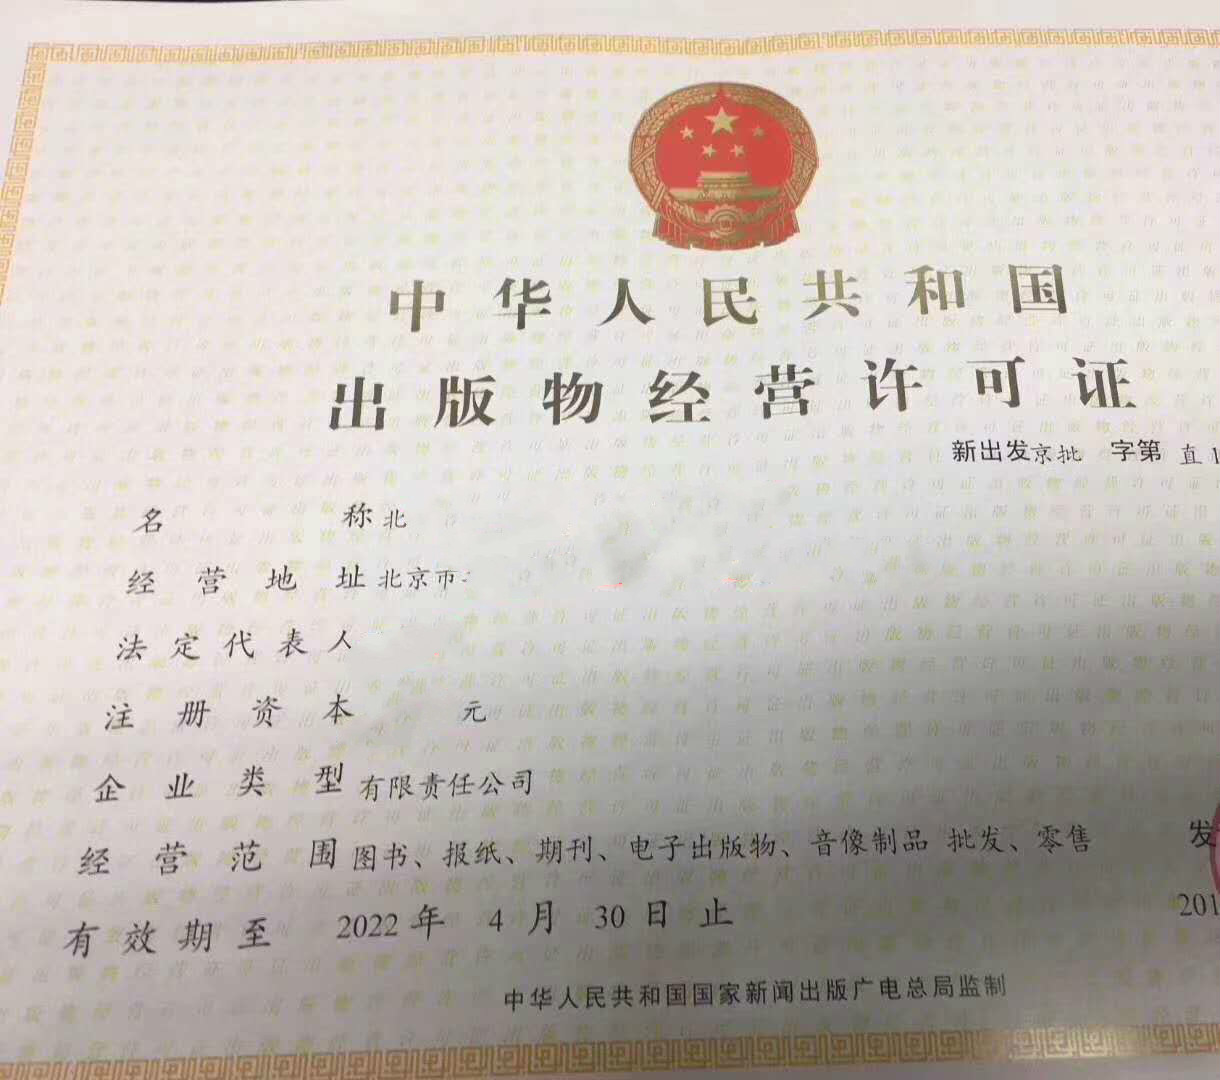 北京海淀区办理出版物经营许可证去哪个部门